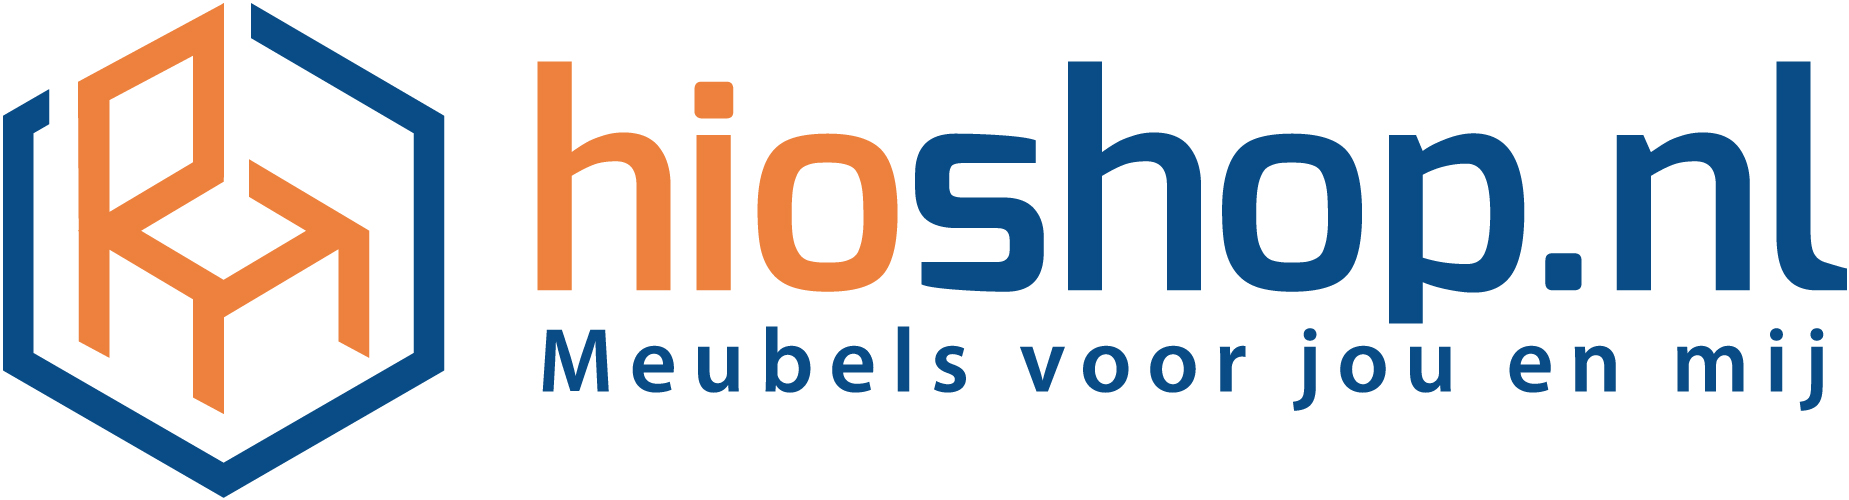 Hioshop-logo